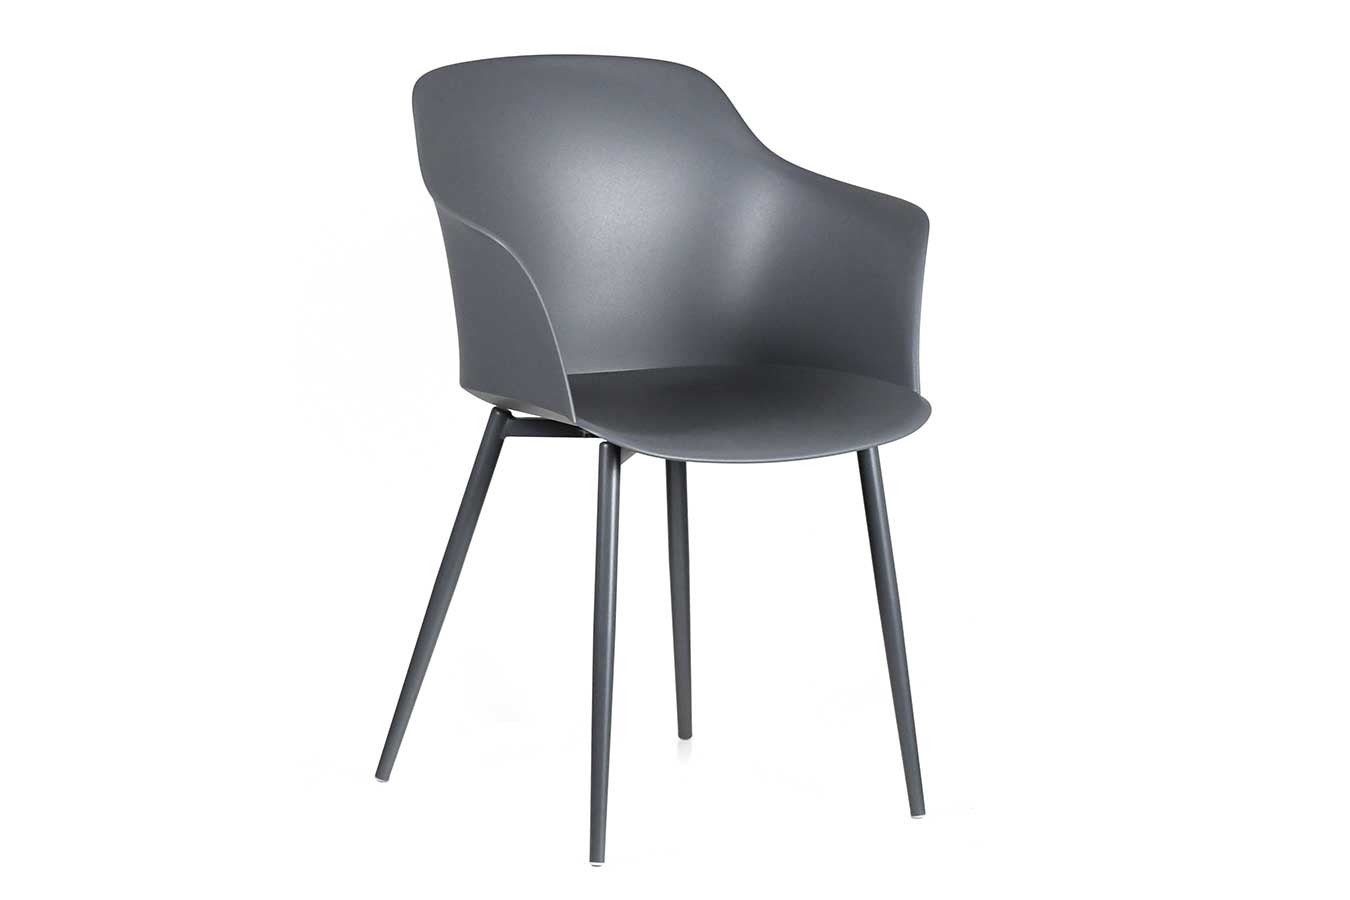 daslagerhaus living dunkelgrau Armlehne Designchair sc Blanchet mit italienischer Stuhl